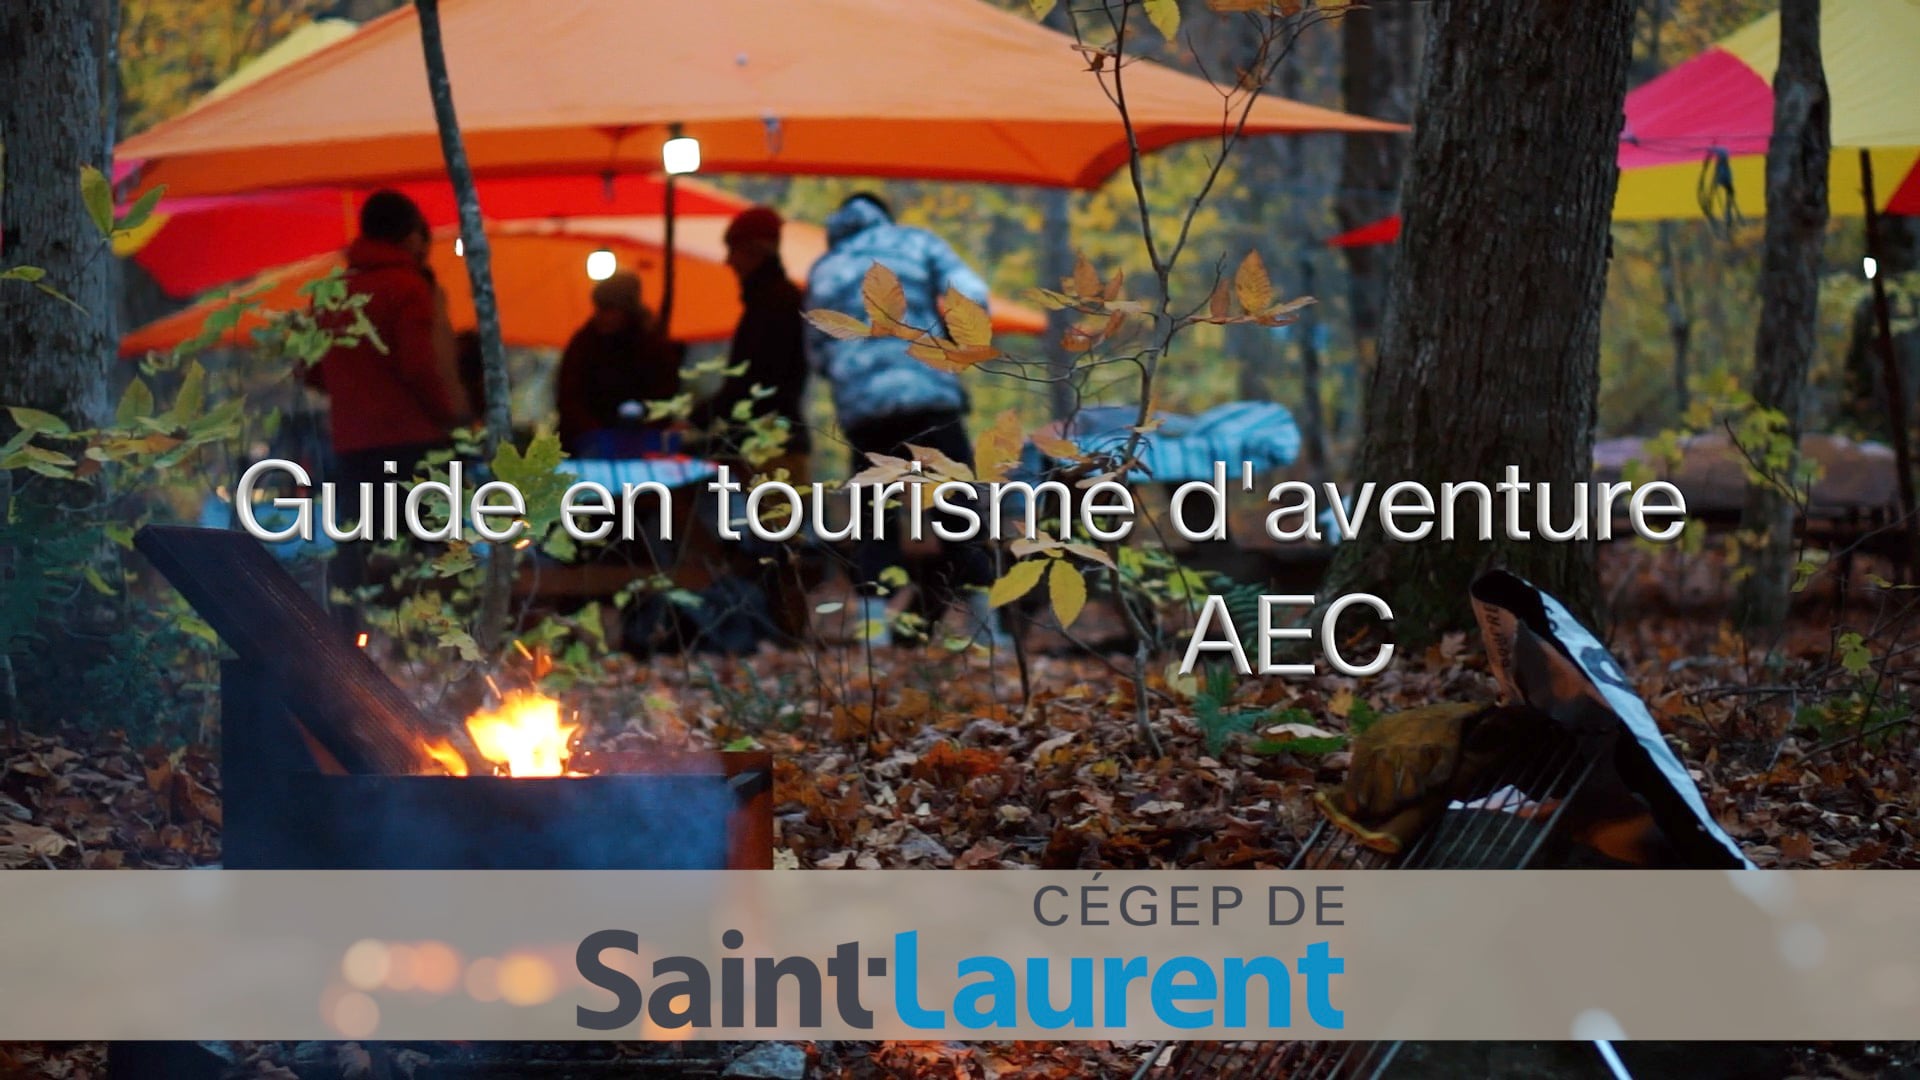 CEGEP de St-Laurent - Guide en tourisme d'aventure